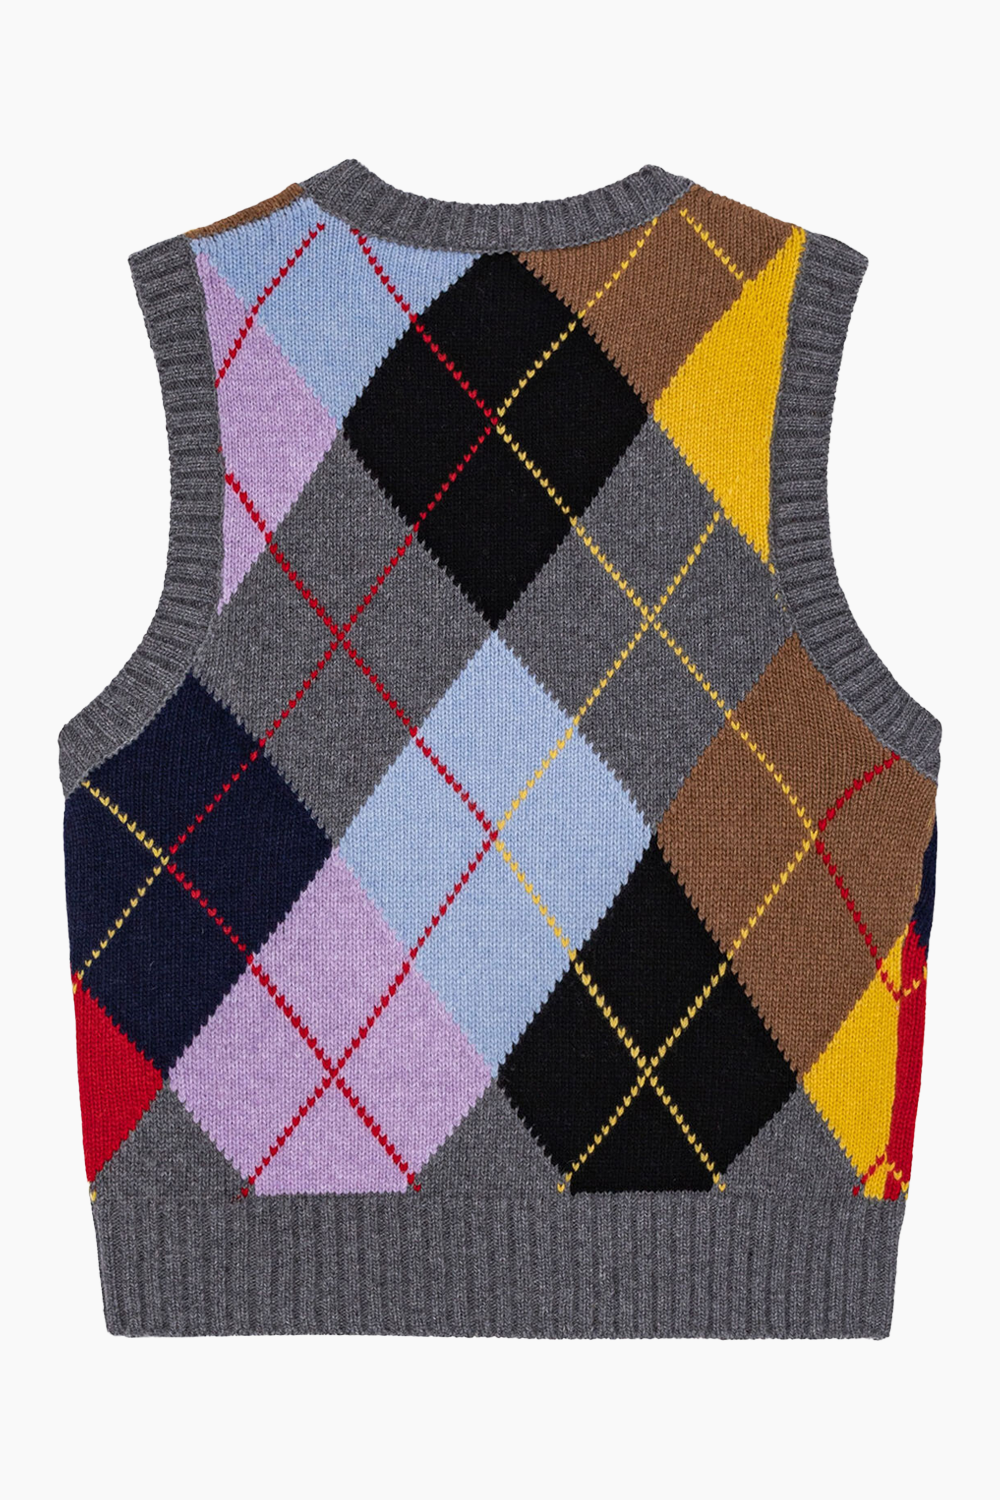 Harlequin Wool Mix Knit Vest K2101 - Frost Grey - GANNI